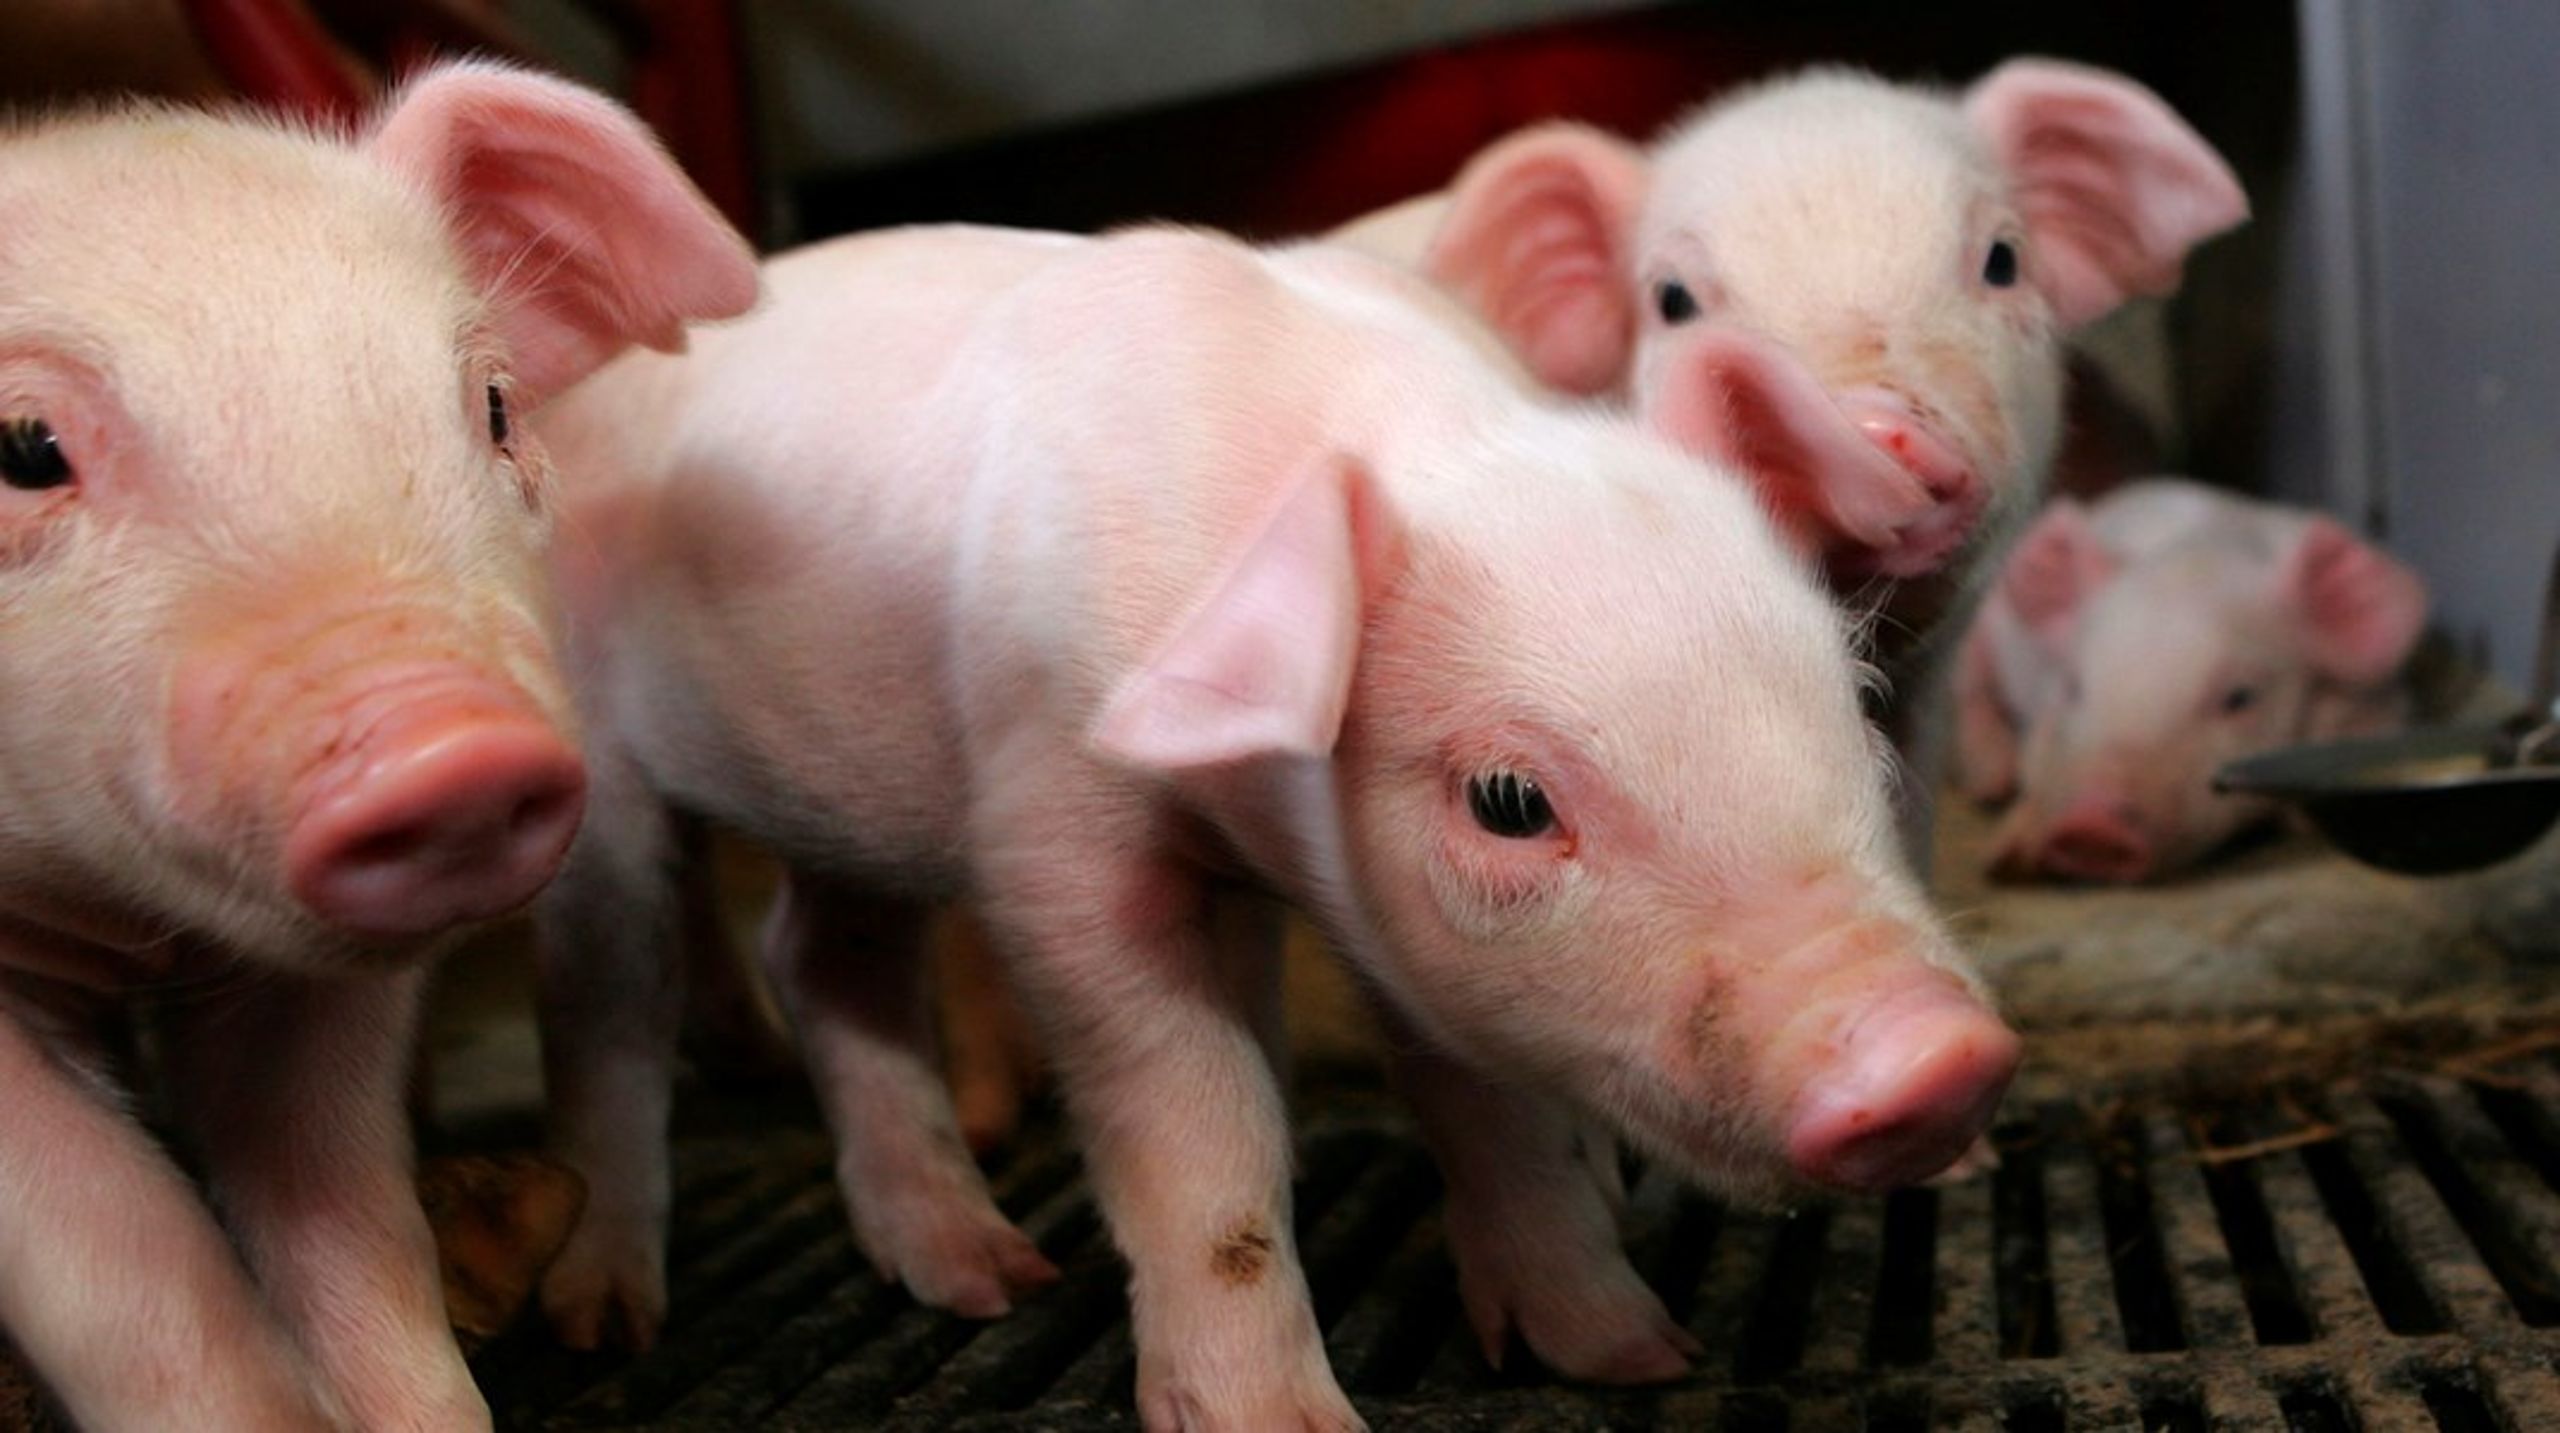 Produktionen af svinekød risikerer at flytte til andre lande uden for EU med dårligere dyrevelfærd, hvis Danmark strammer kravene, advarer landbruget.